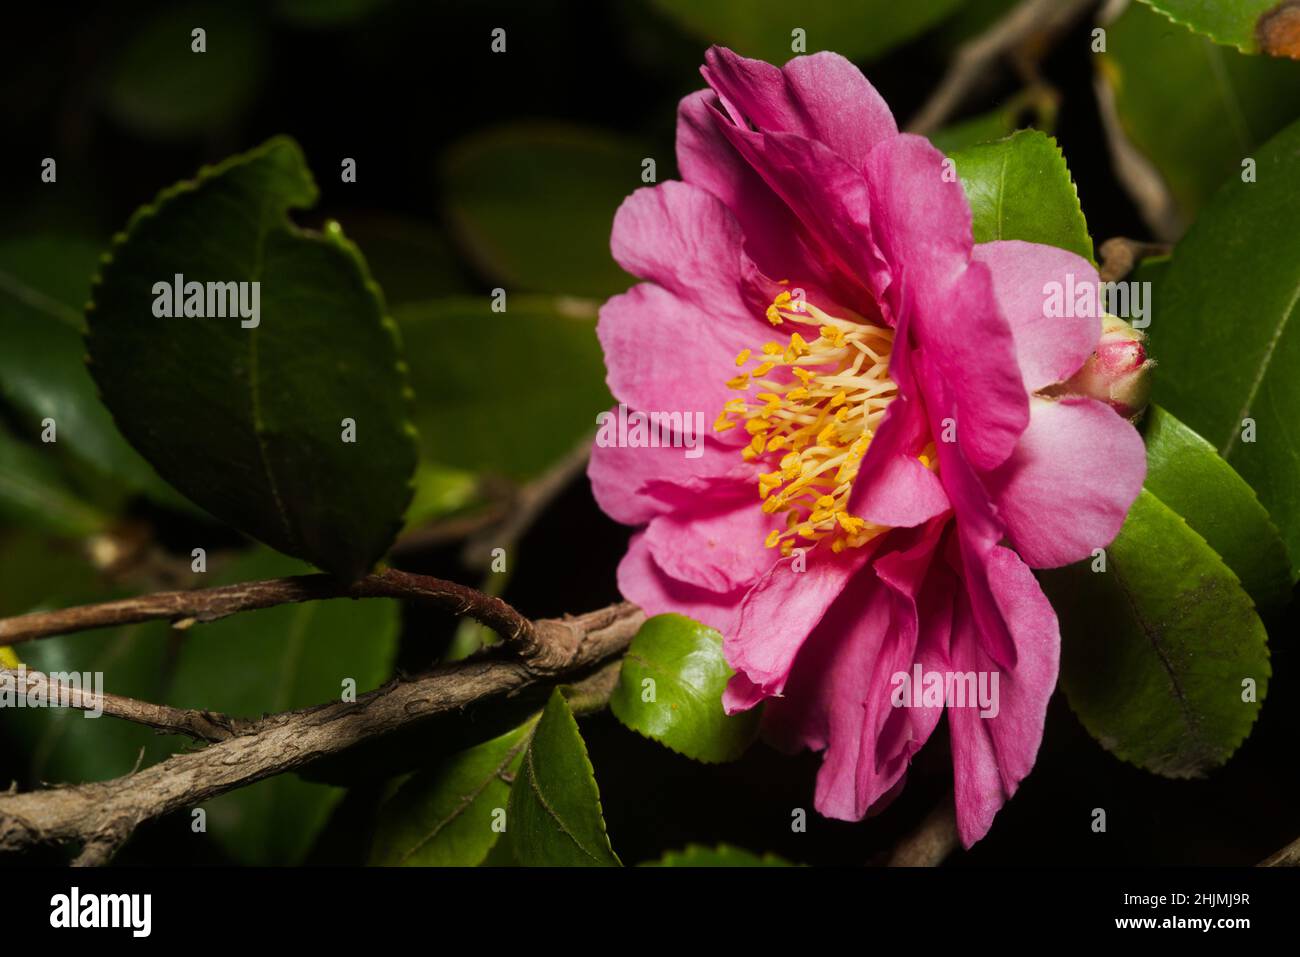 La bellezza della madre natura, abbonda nell'albero fiorito della camellia rosa. Ricco di clor di petalo rosa profondo, balza gialla e foglie verdi che aggiungono scorza e vita, Foto Stock